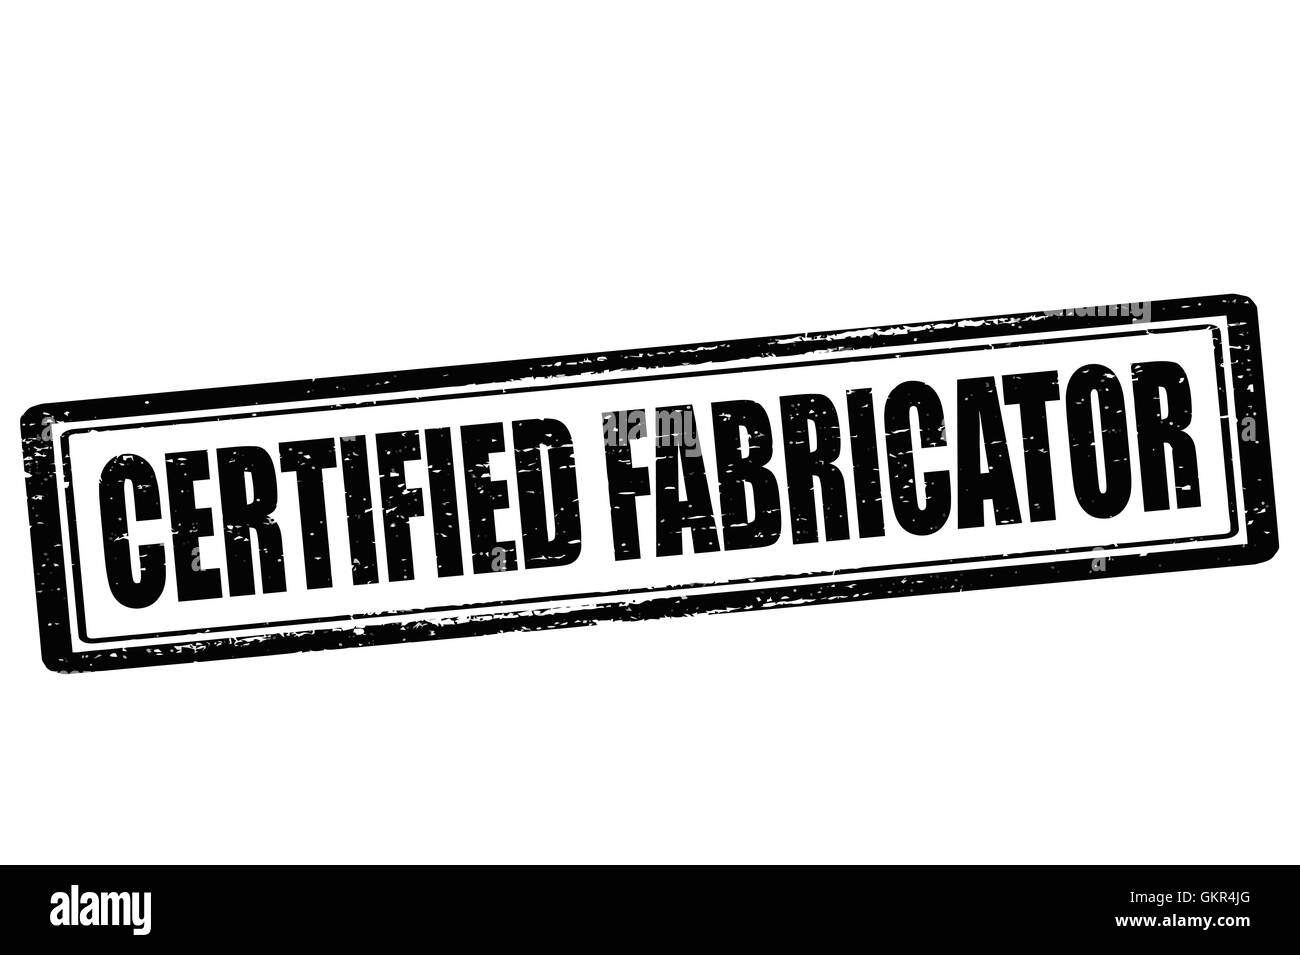 Certified fabricator Stock Vector